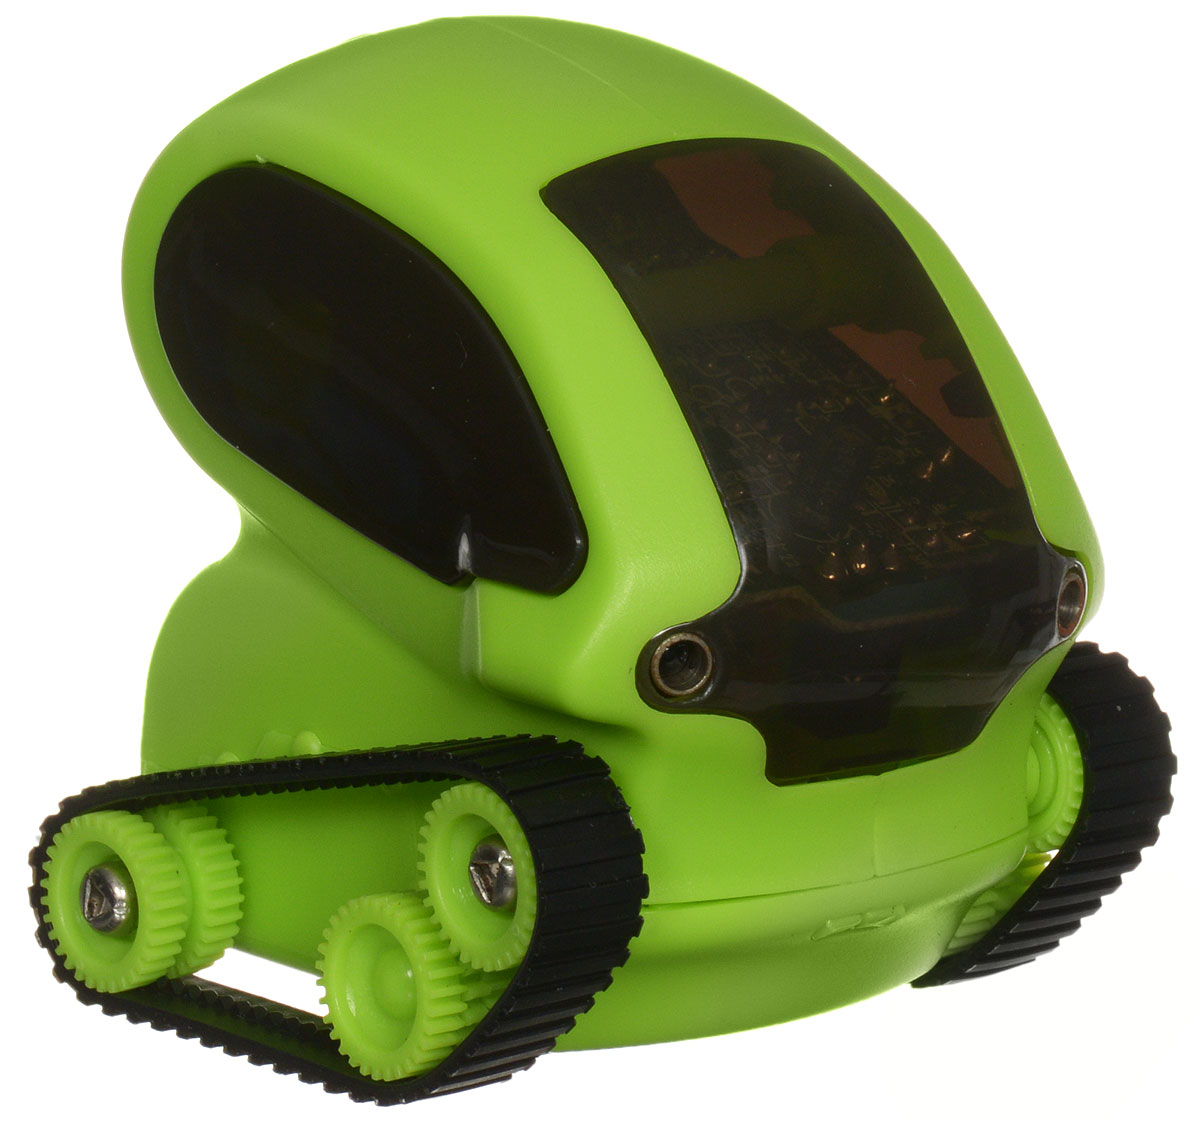 фото DeskPets Микро-робот на радиоуправлении Танкбот цвет зеленый